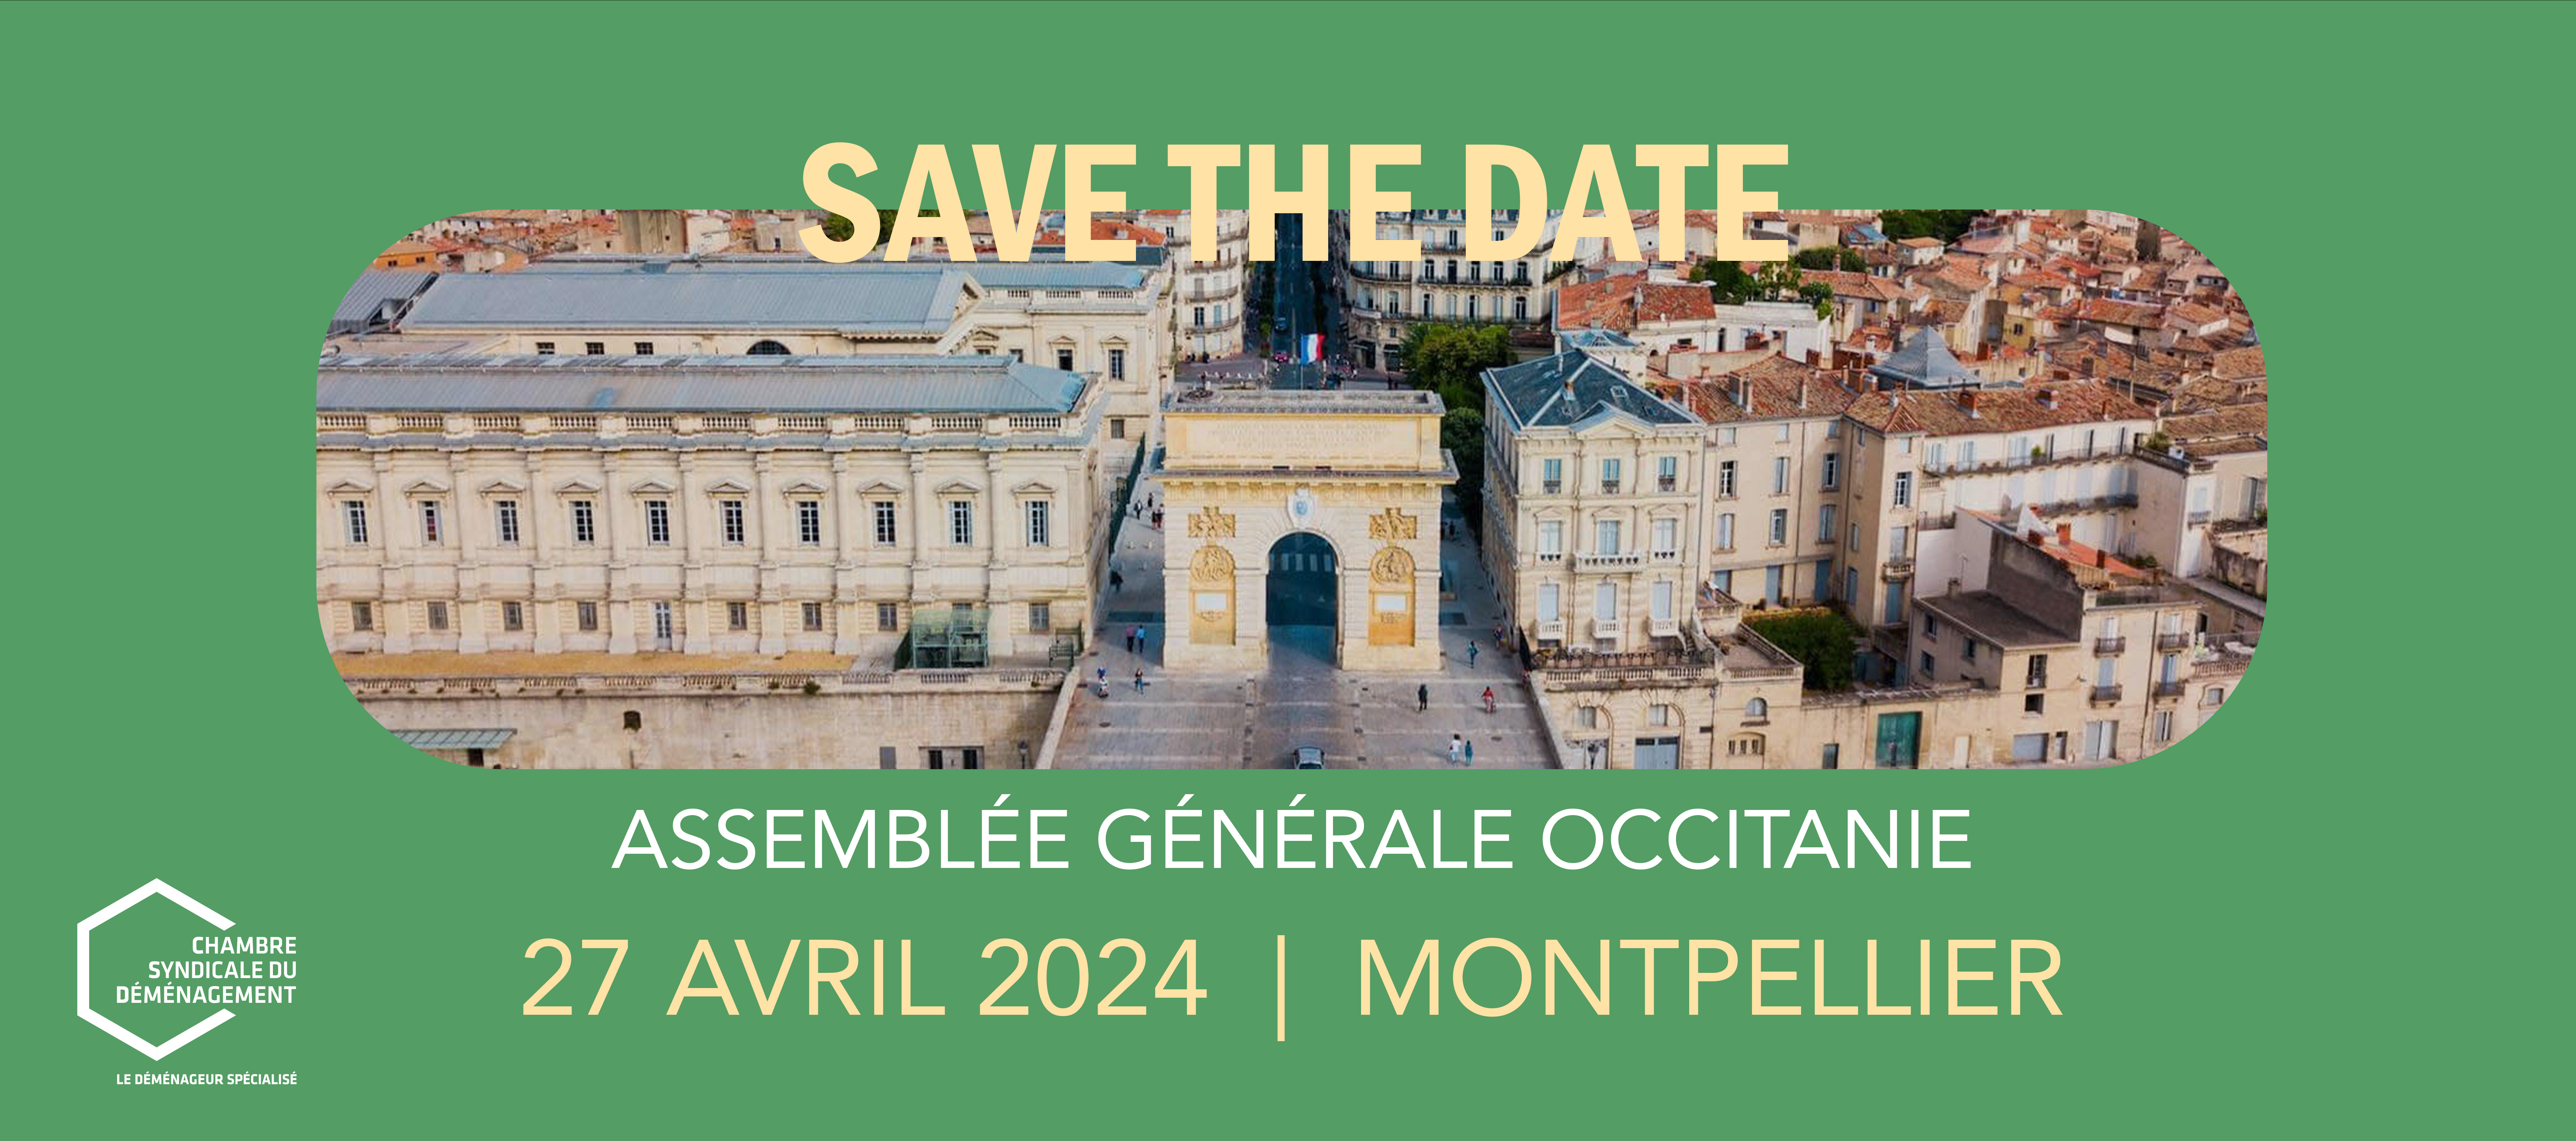 Save the date Occitanie 2024